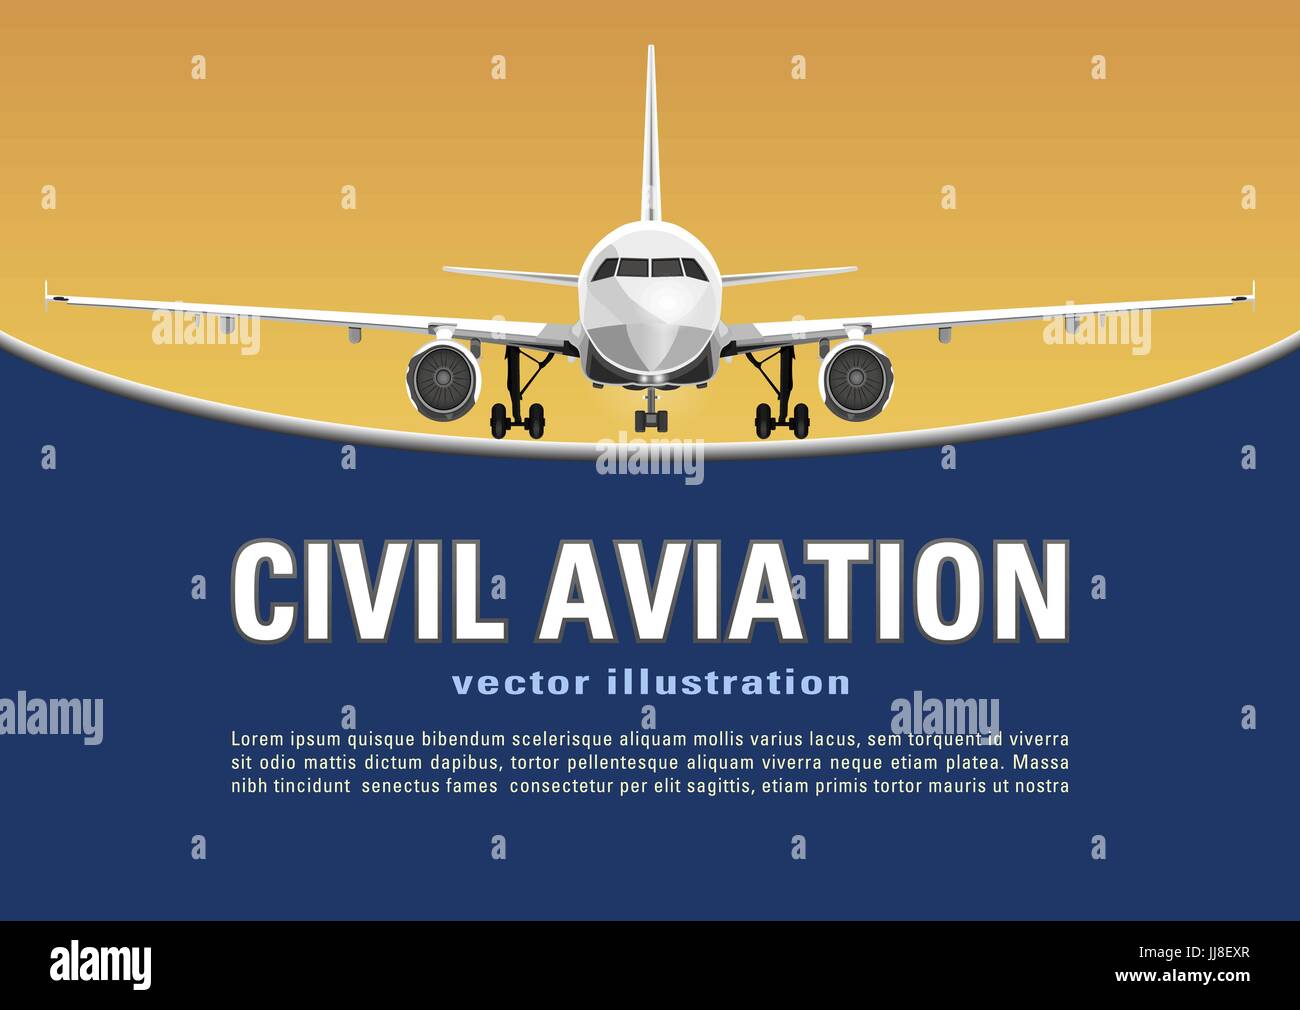 Flugzeug-Vektor. Banner, Poster, Flyer, Karte von Flugzeug auf einem sonnigen gelben Hintergrund und Text auf dem blauen Hintergrund. Kommerzielle Düsenflugzeug voll ins Gesicht Stock Vektor